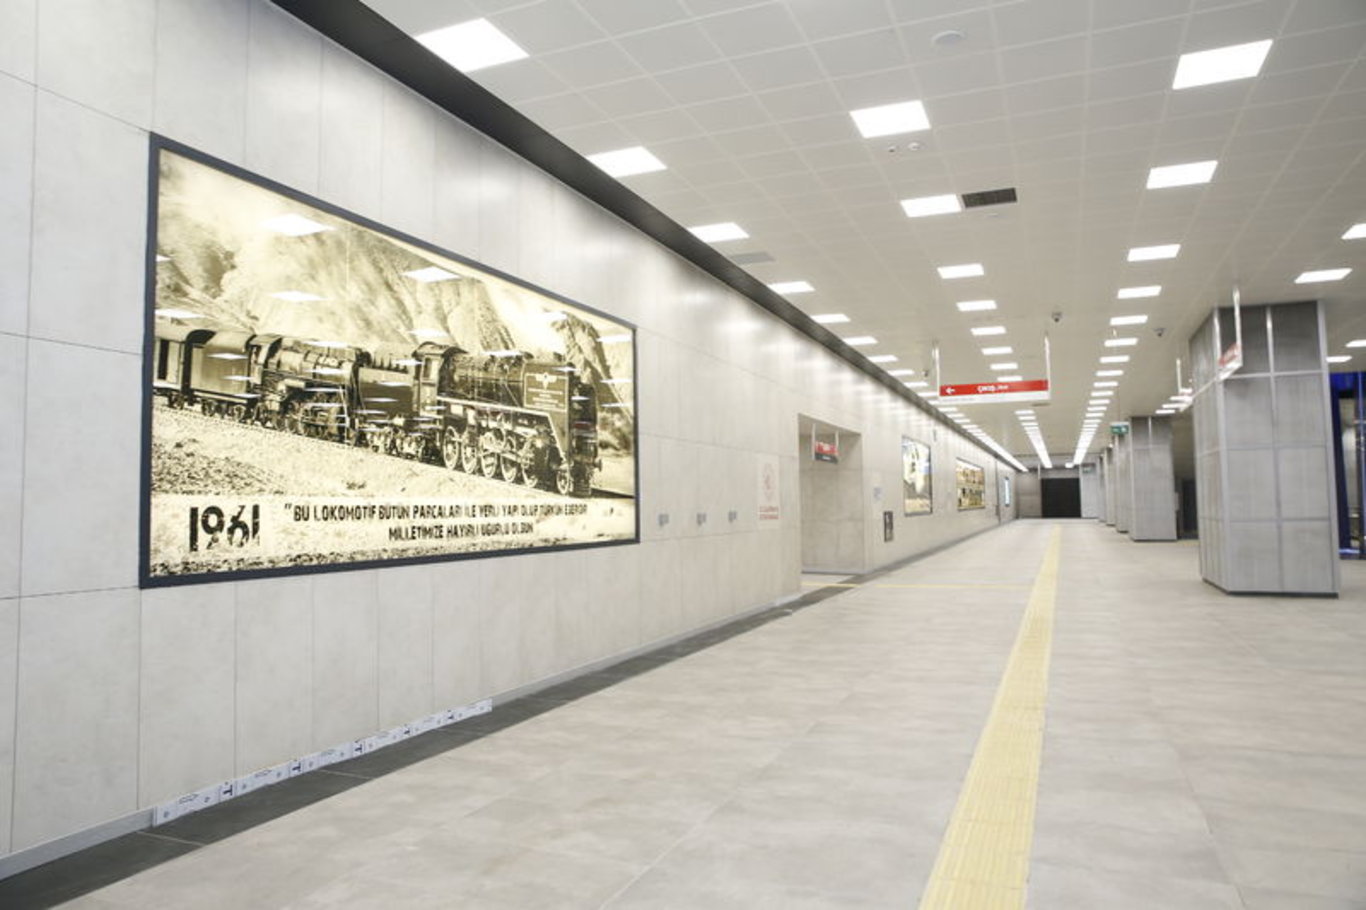 Ankara'nın yeni metro hattı hizmete açıldı! AKM-Gar-Kızılay Metro Hattı'nda kaç durak var, durak isimleri neler ve hangi güzergahlardan geçiyor?